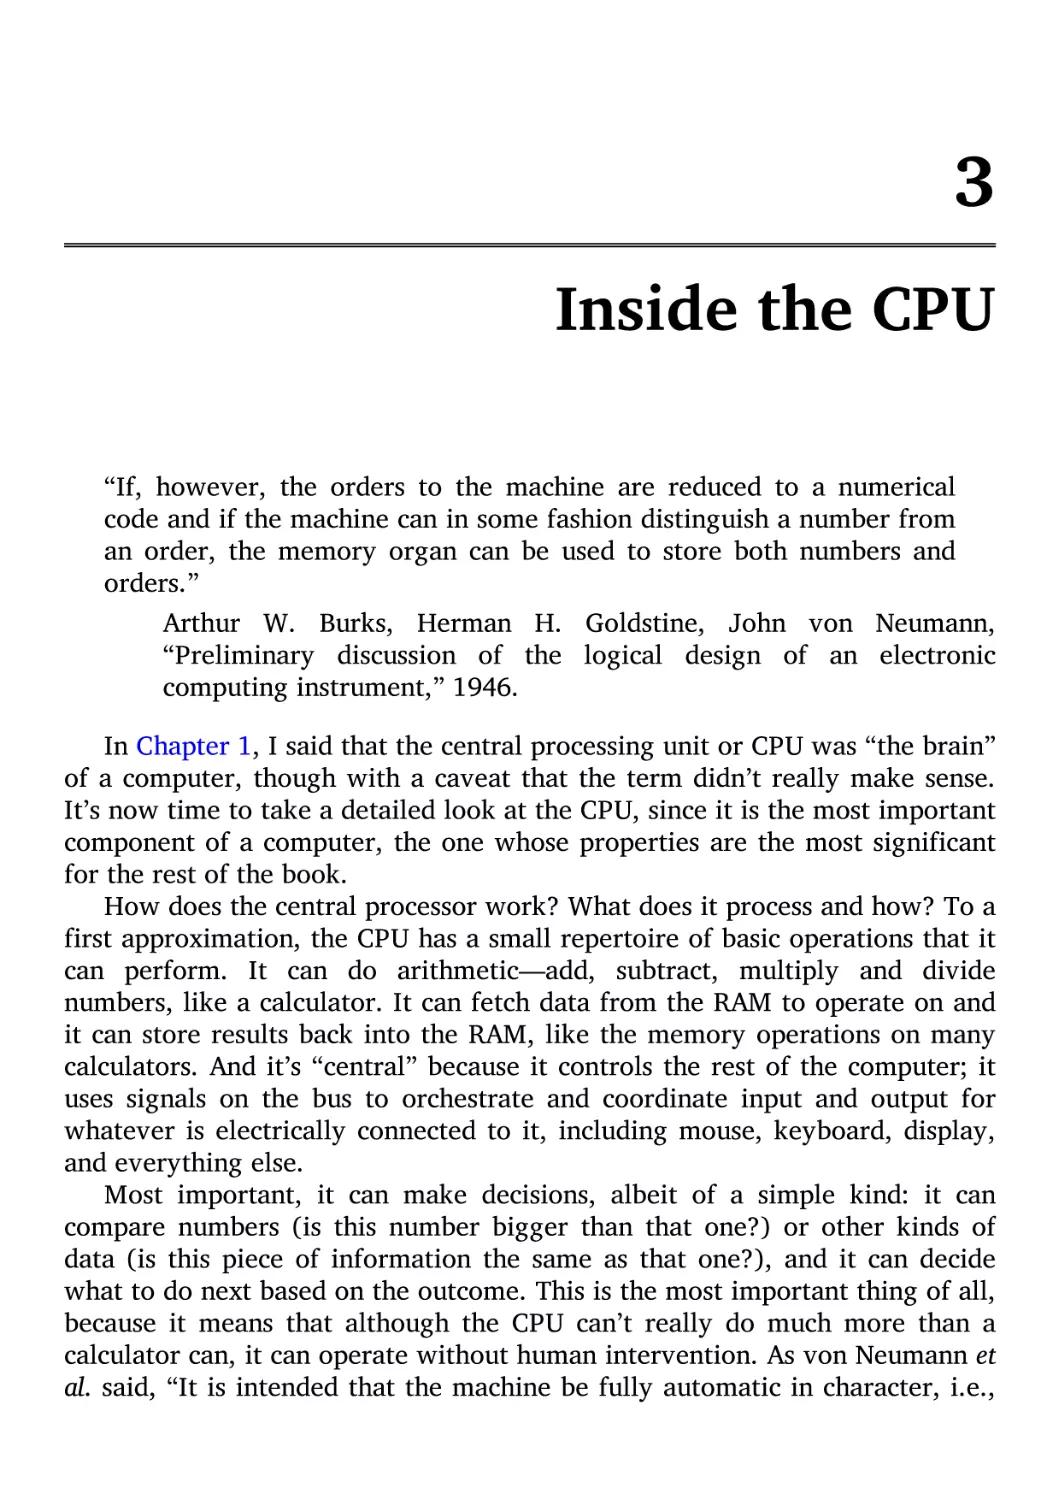 3. Inside the CPU